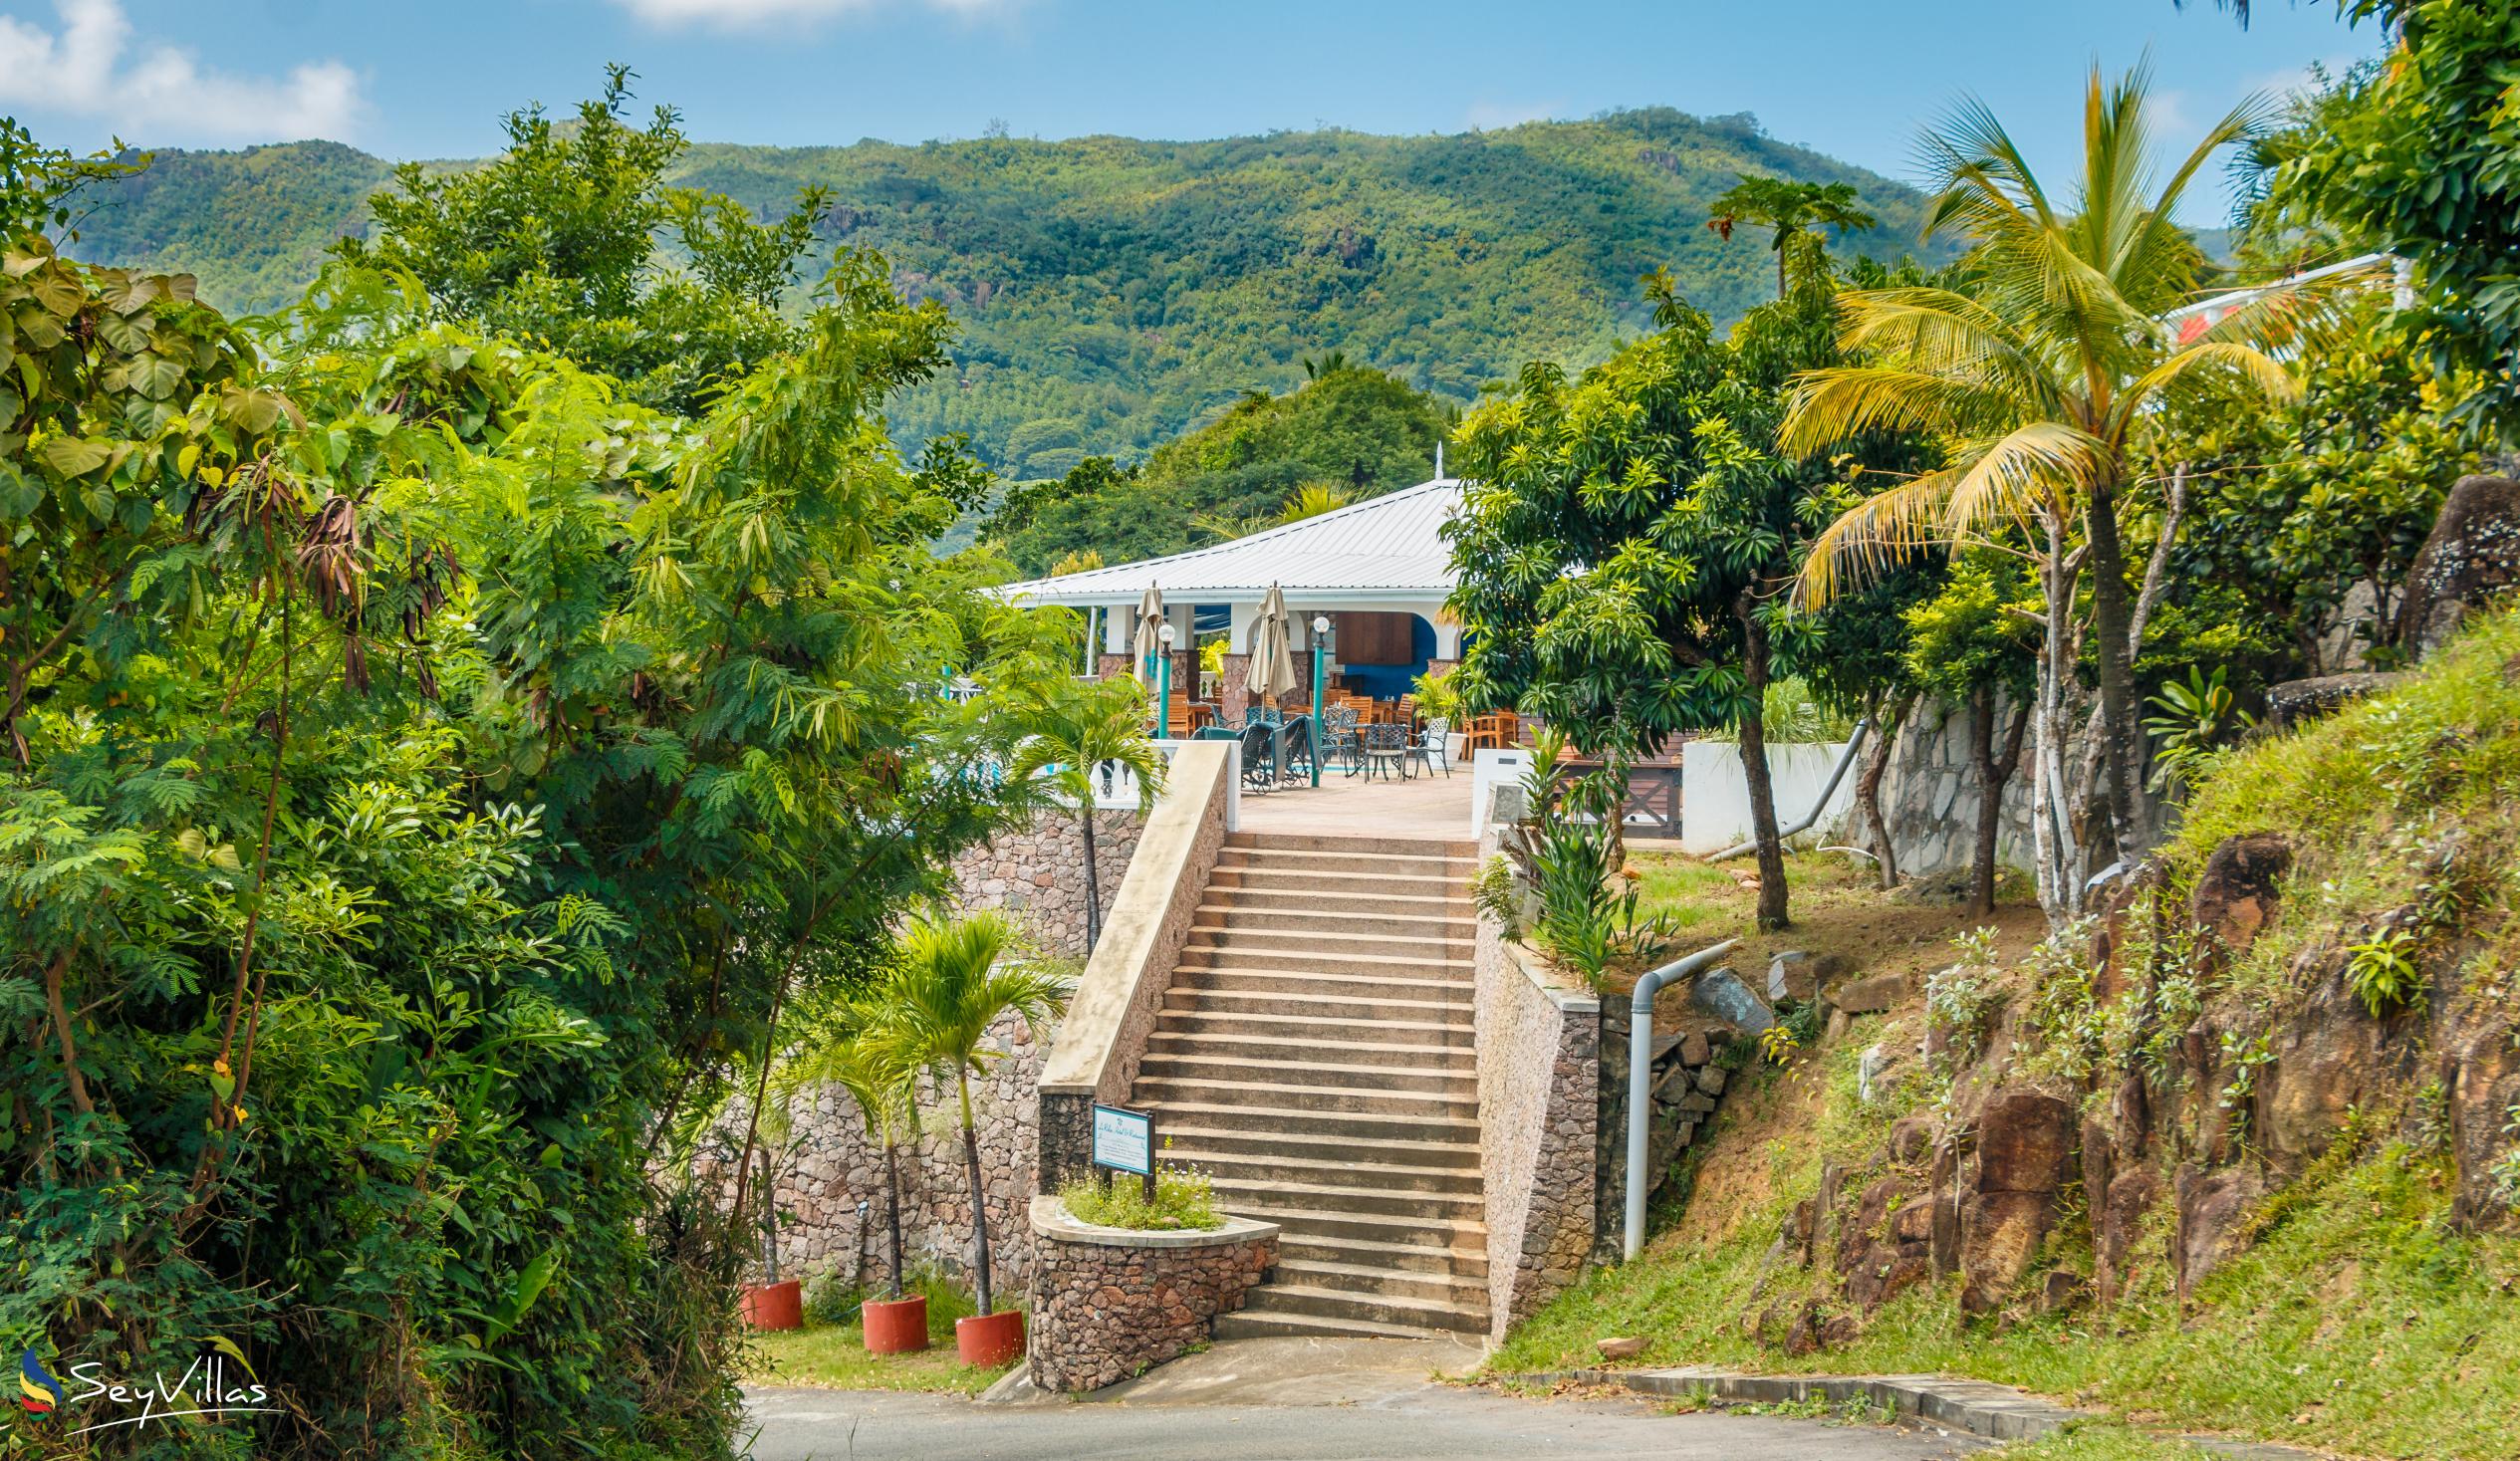 Foto 23: Villa Bel Age - Location - Mahé (Seychelles)